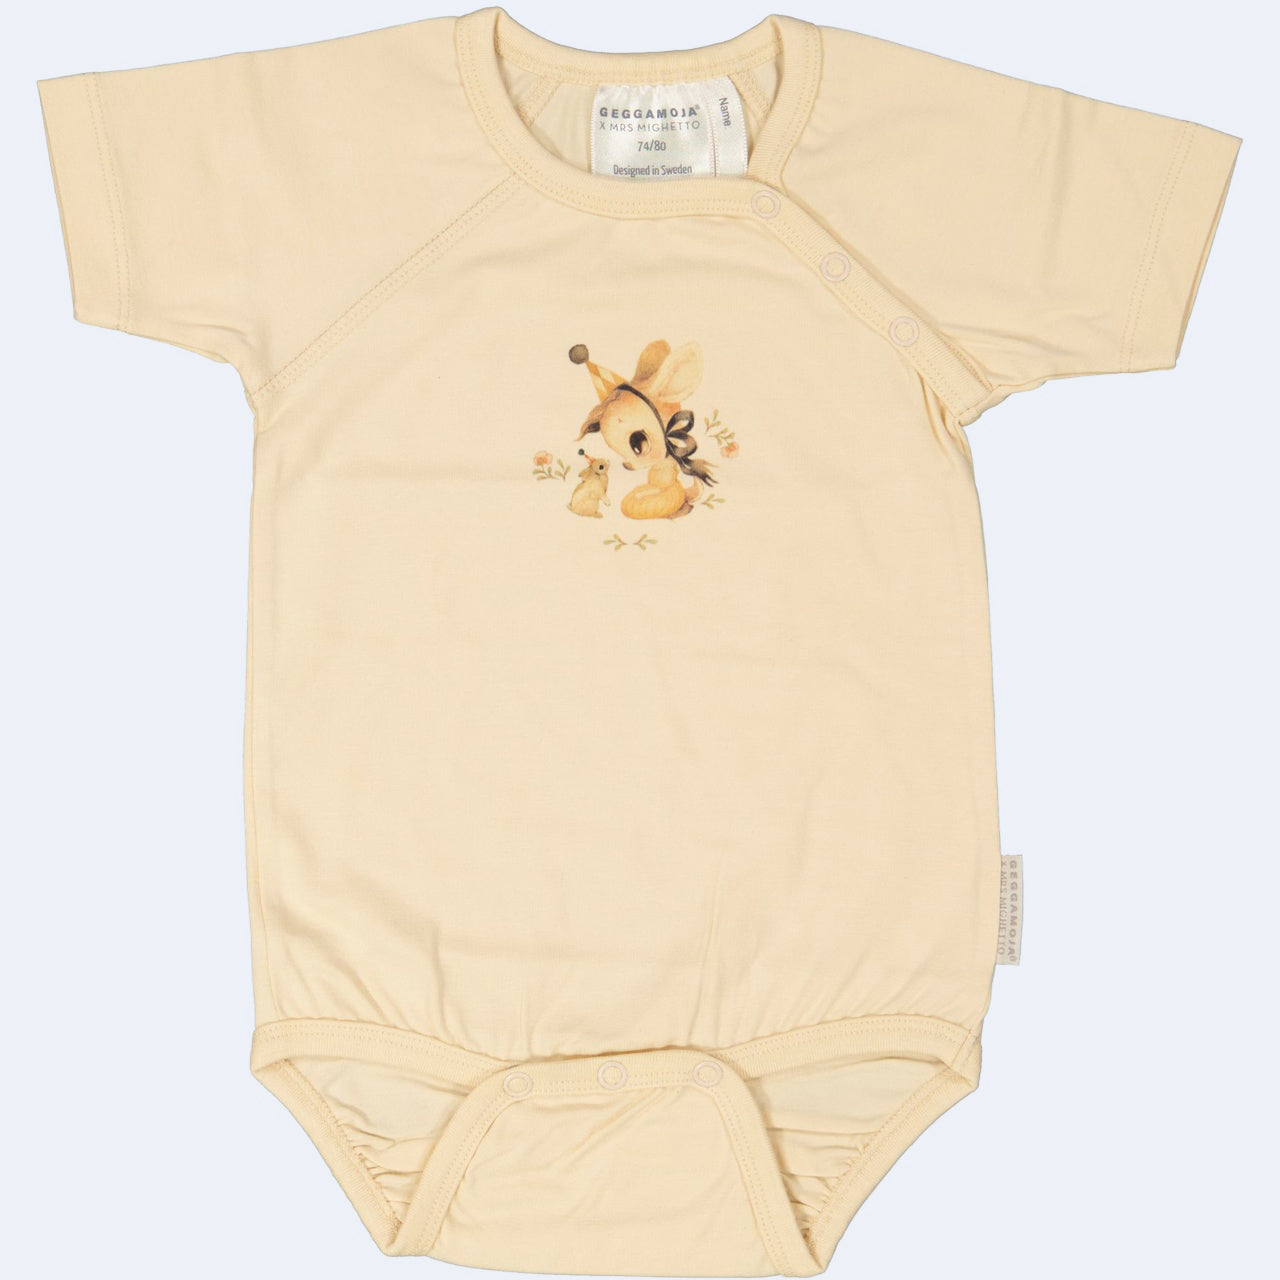 Geggamoja ® MRS MIGHETTO "STELLA" Baby Body Shirt in Soft Bamboo/Organic Cotton